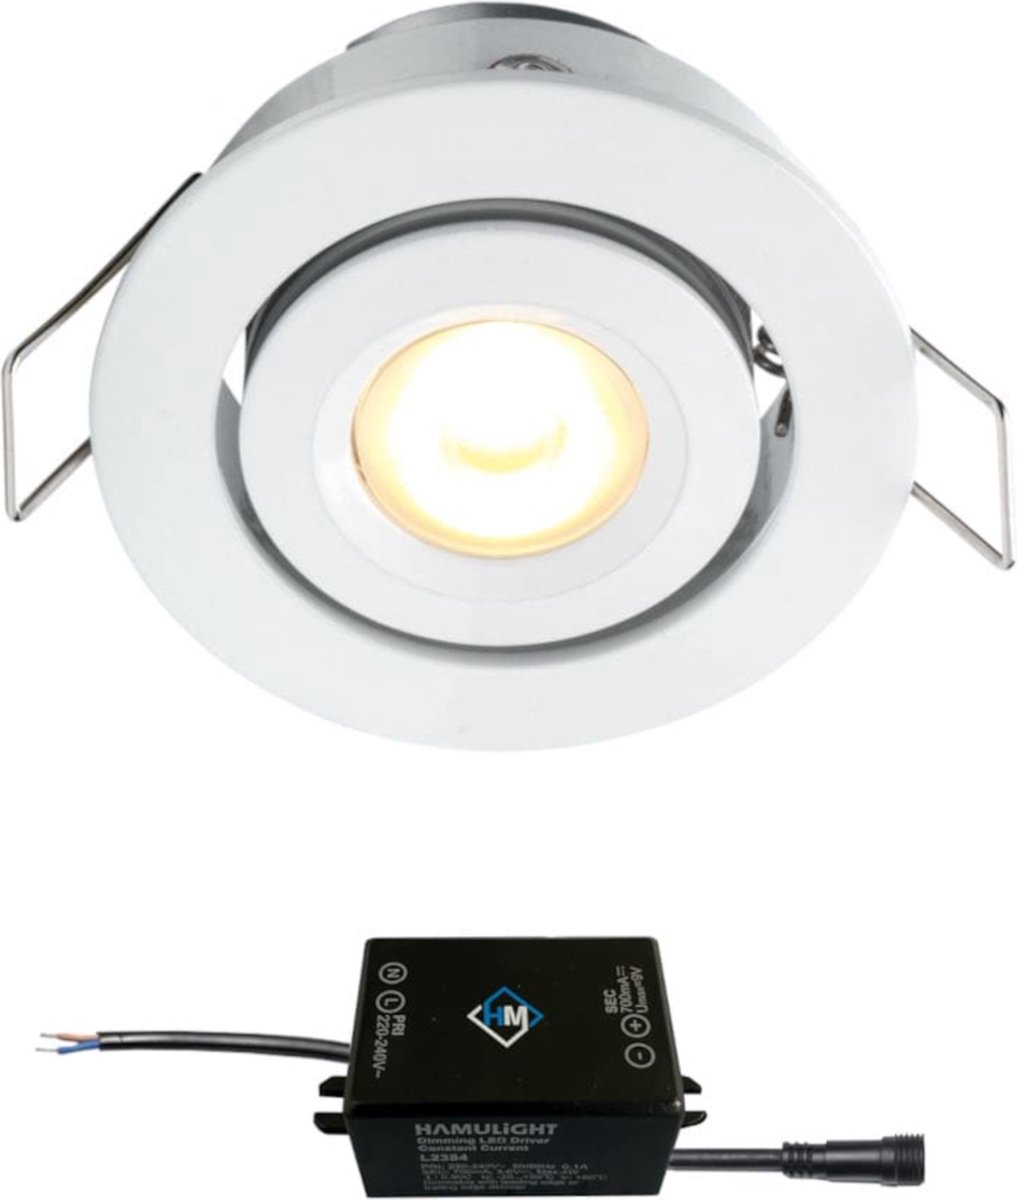 Cree LED inbouwspot Toledo wit in - 3W / rond / dimbaar / kantelbaar / 230V / IP44 / downlights / plafondspots / spotjes / inbouwspots / badkamer / woonkamer / keuken / spotlight / warmwit